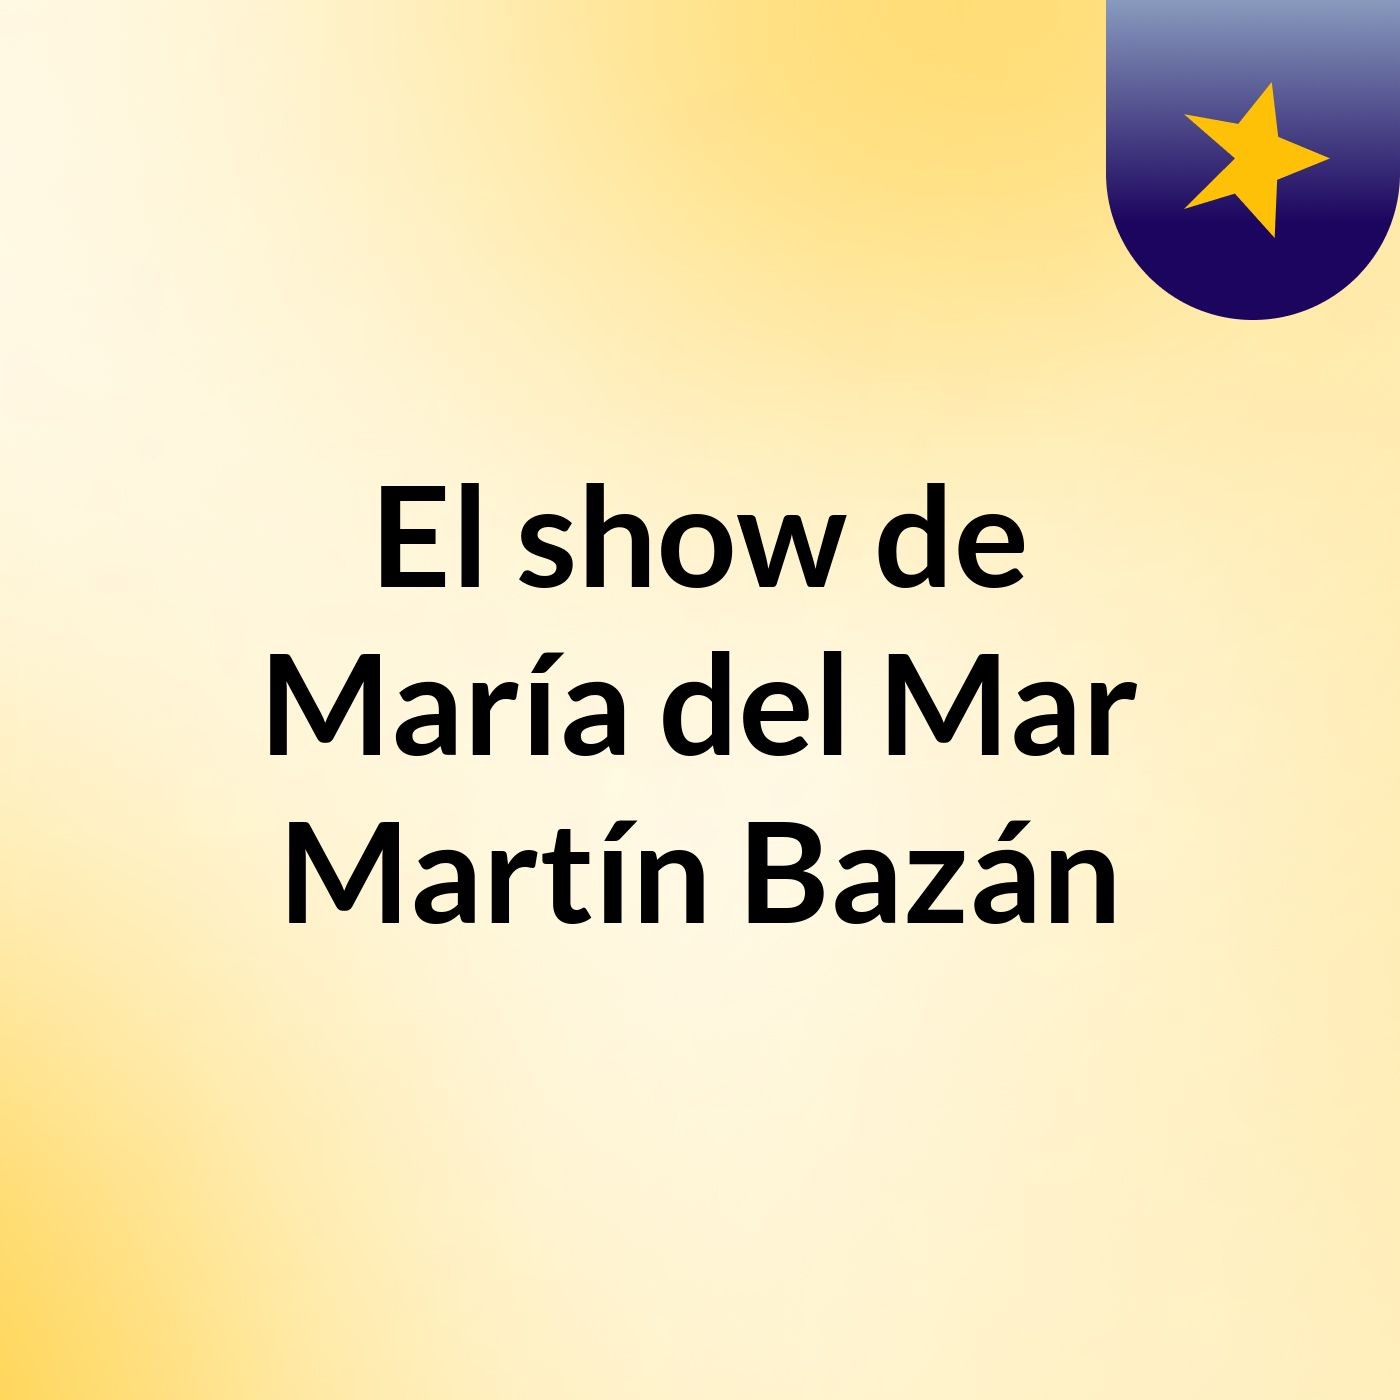 El show de María del Mar Martín Bazán